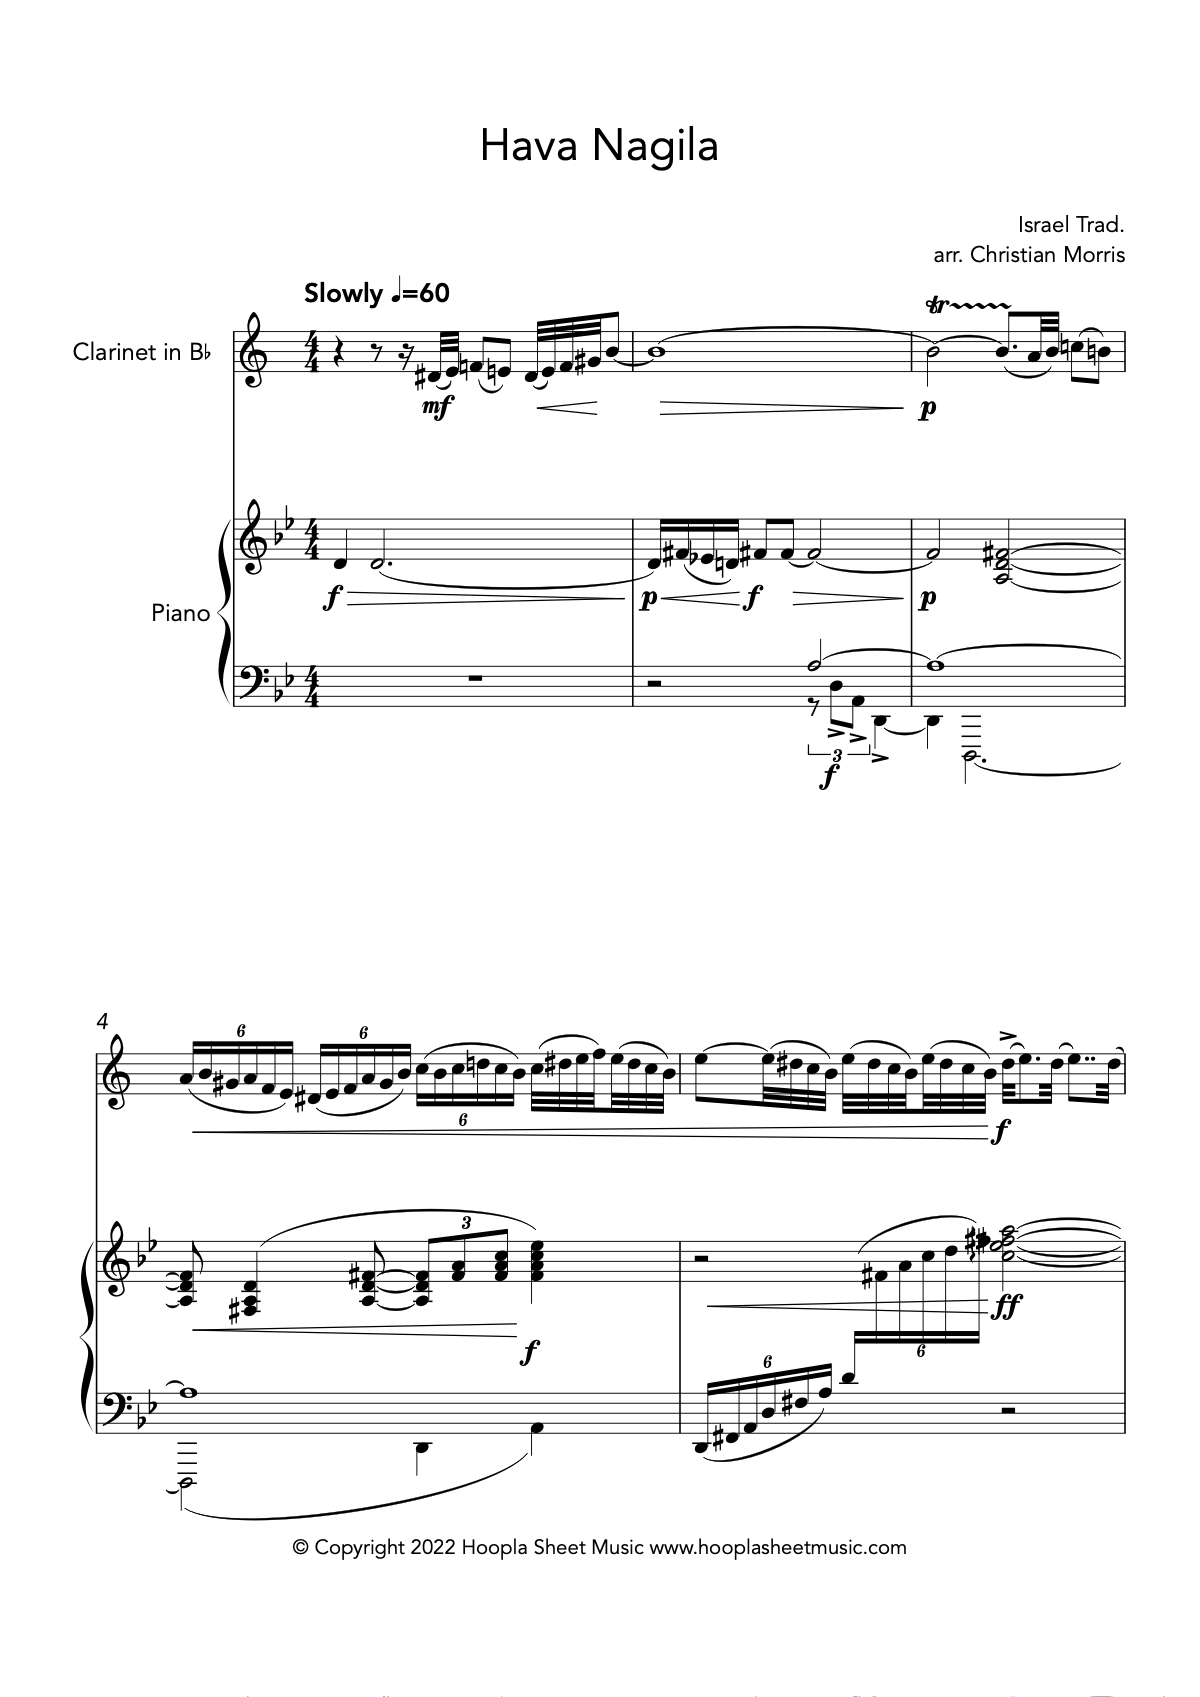 Hava Nagila (Clarinet and Piano)